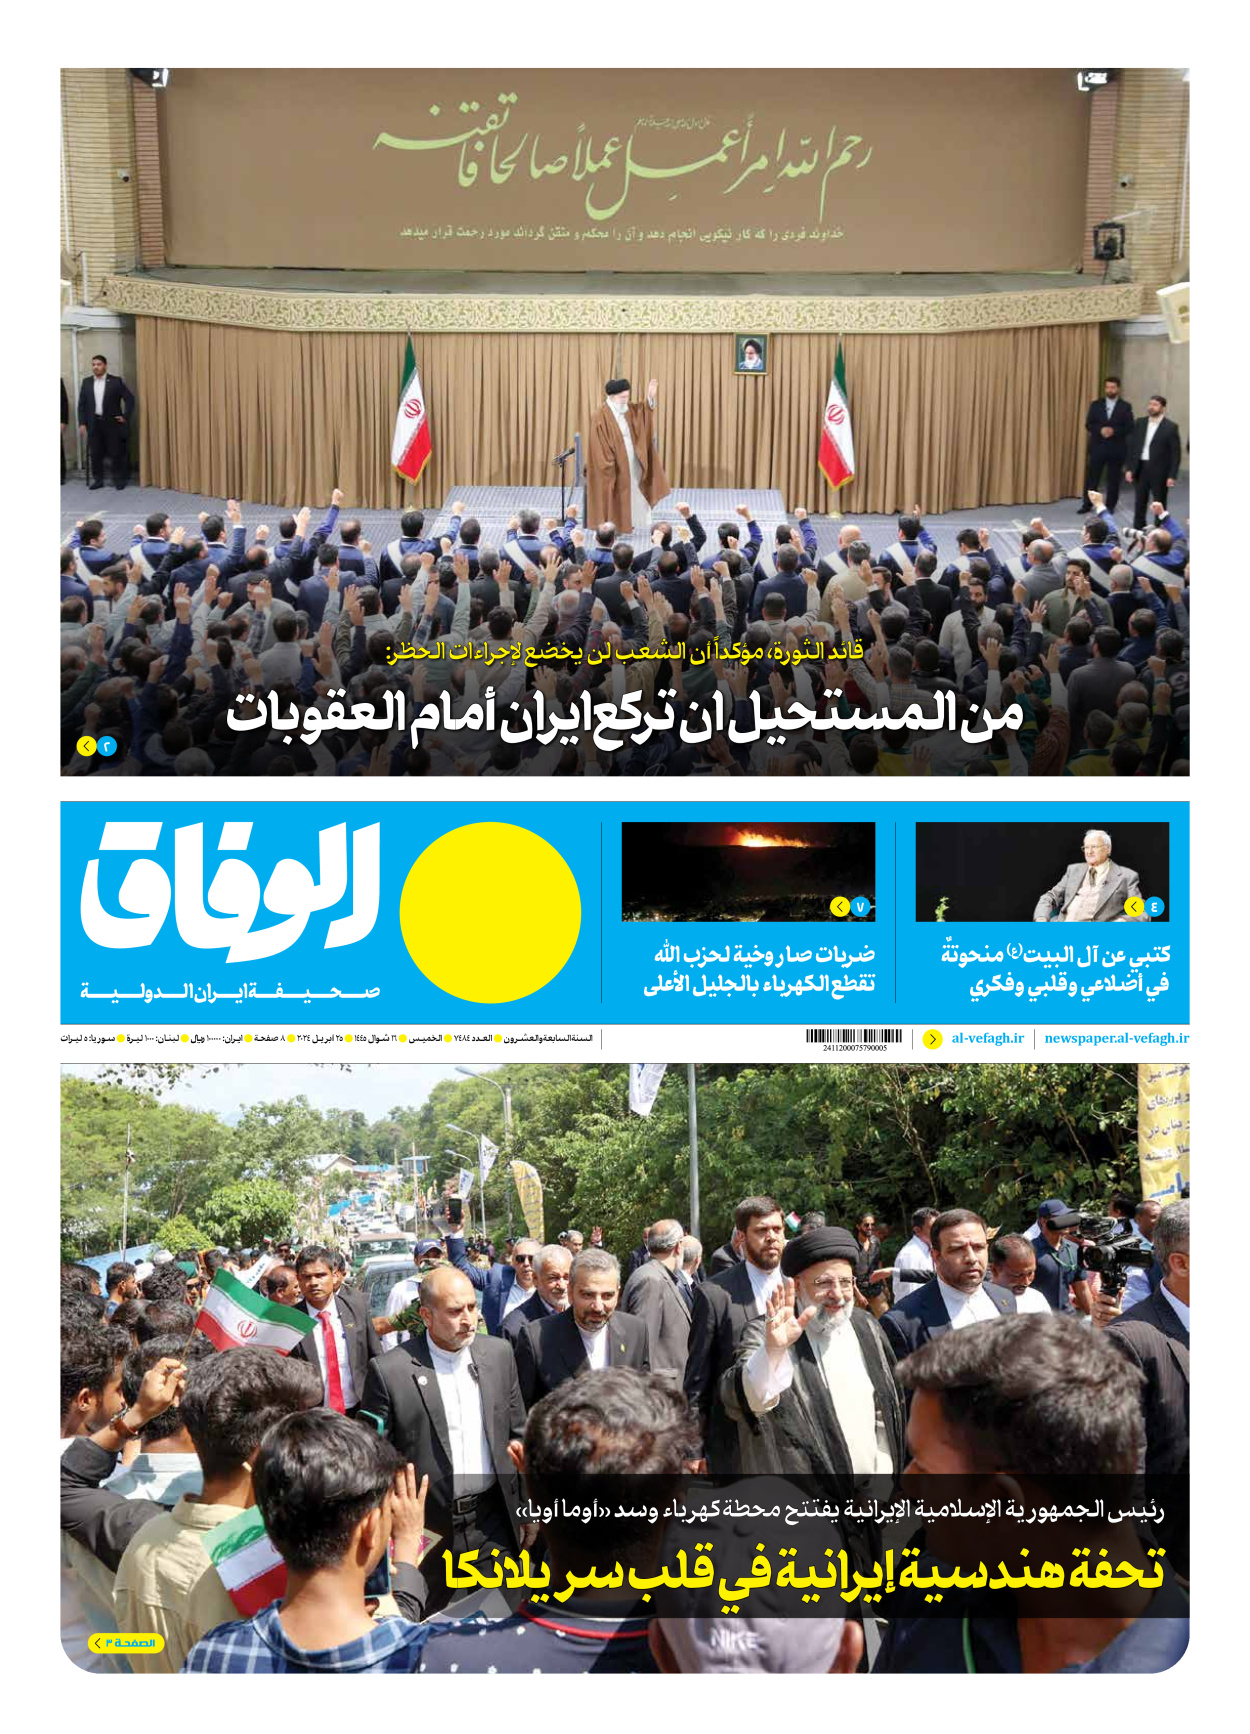 صحیفة ایران الدولیة الوفاق - العدد سبعة آلاف وأربعمائة وأربعة وثمانون - ٢٥ أبريل ٢٠٢٤ - الصفحة ۱